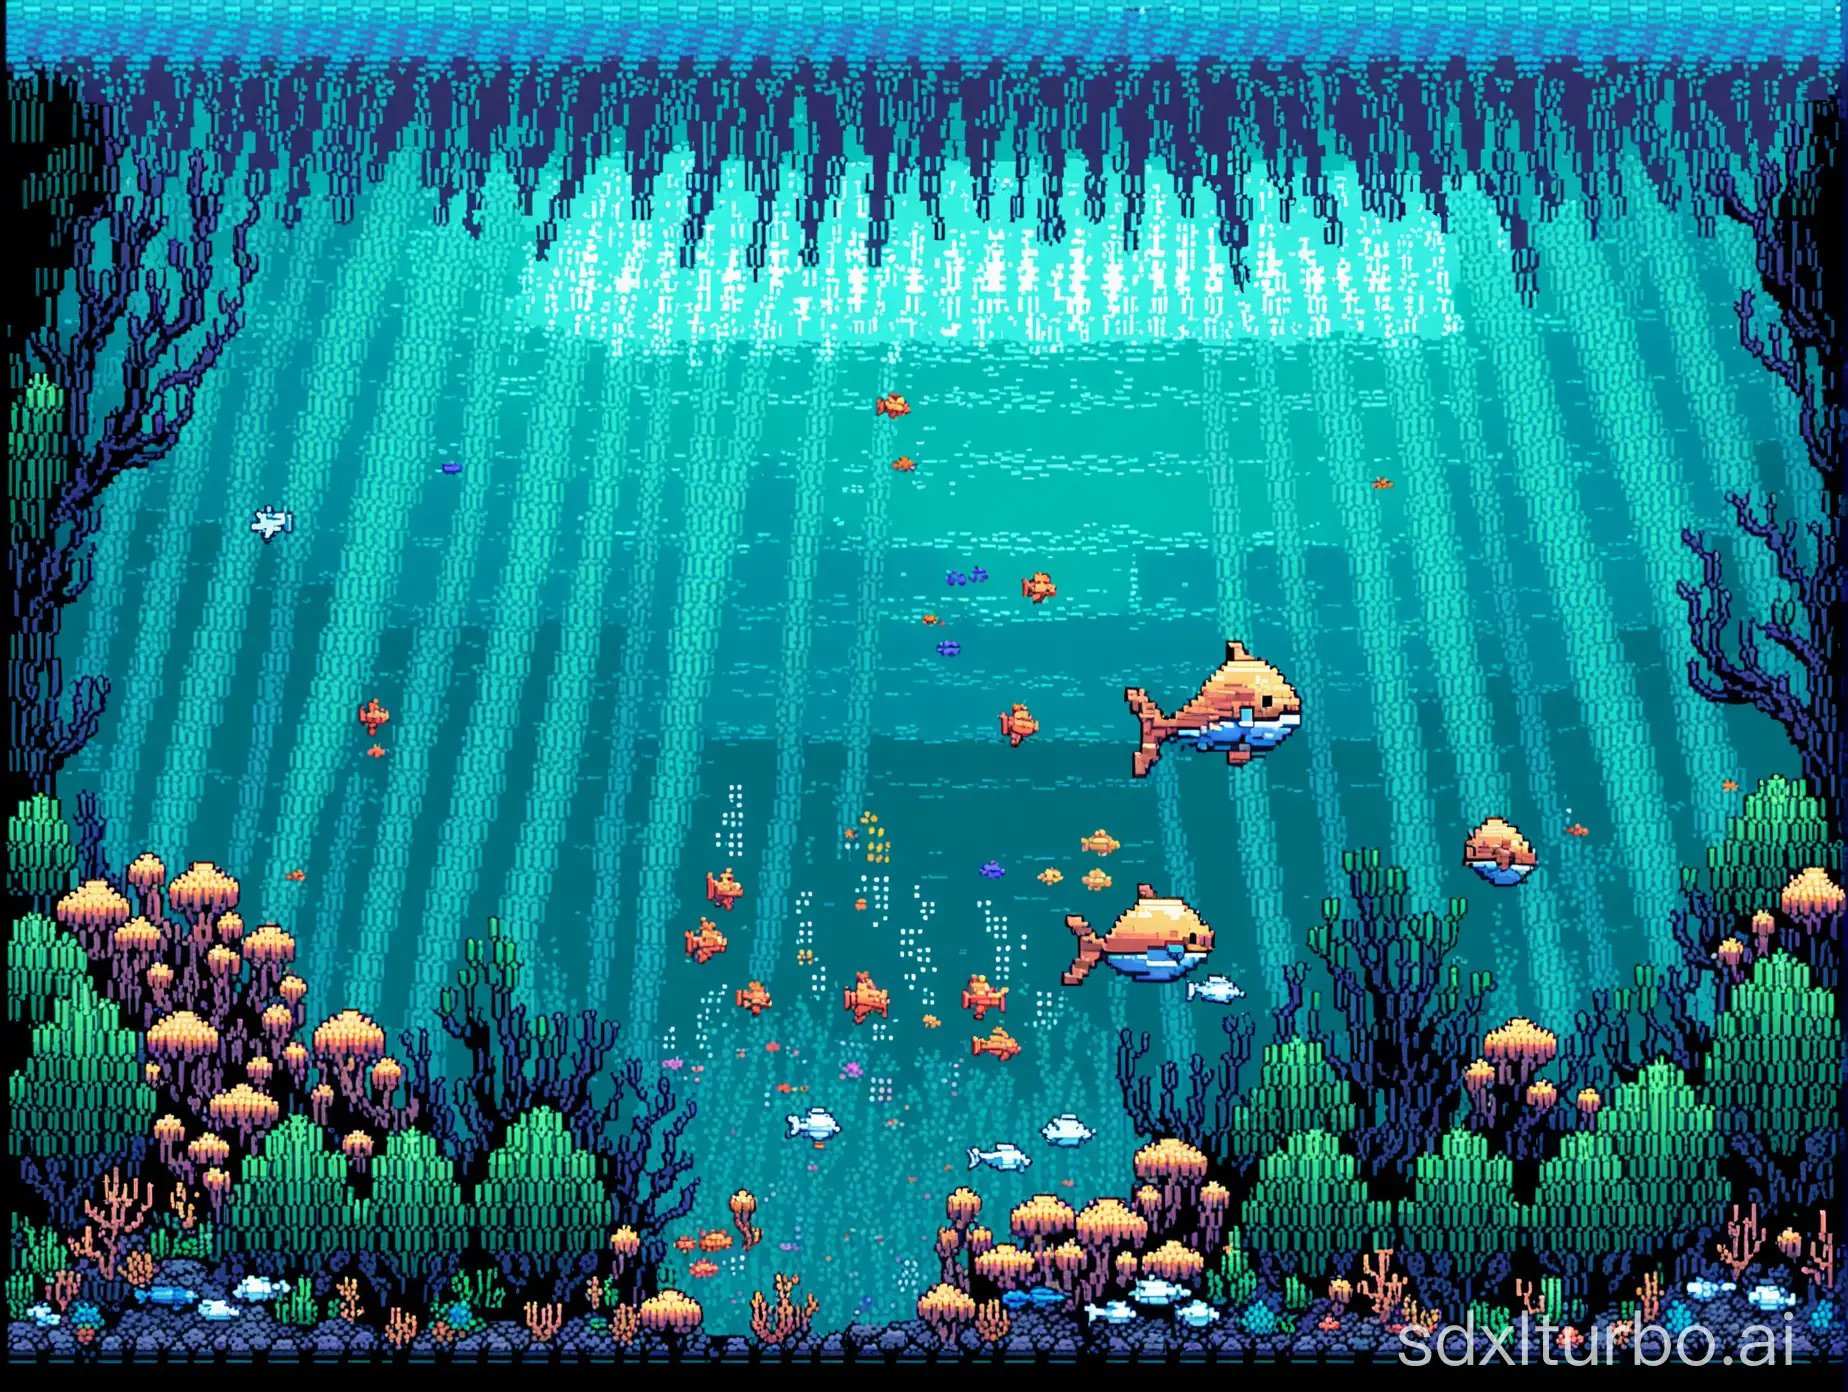 Underwater pixel art scene